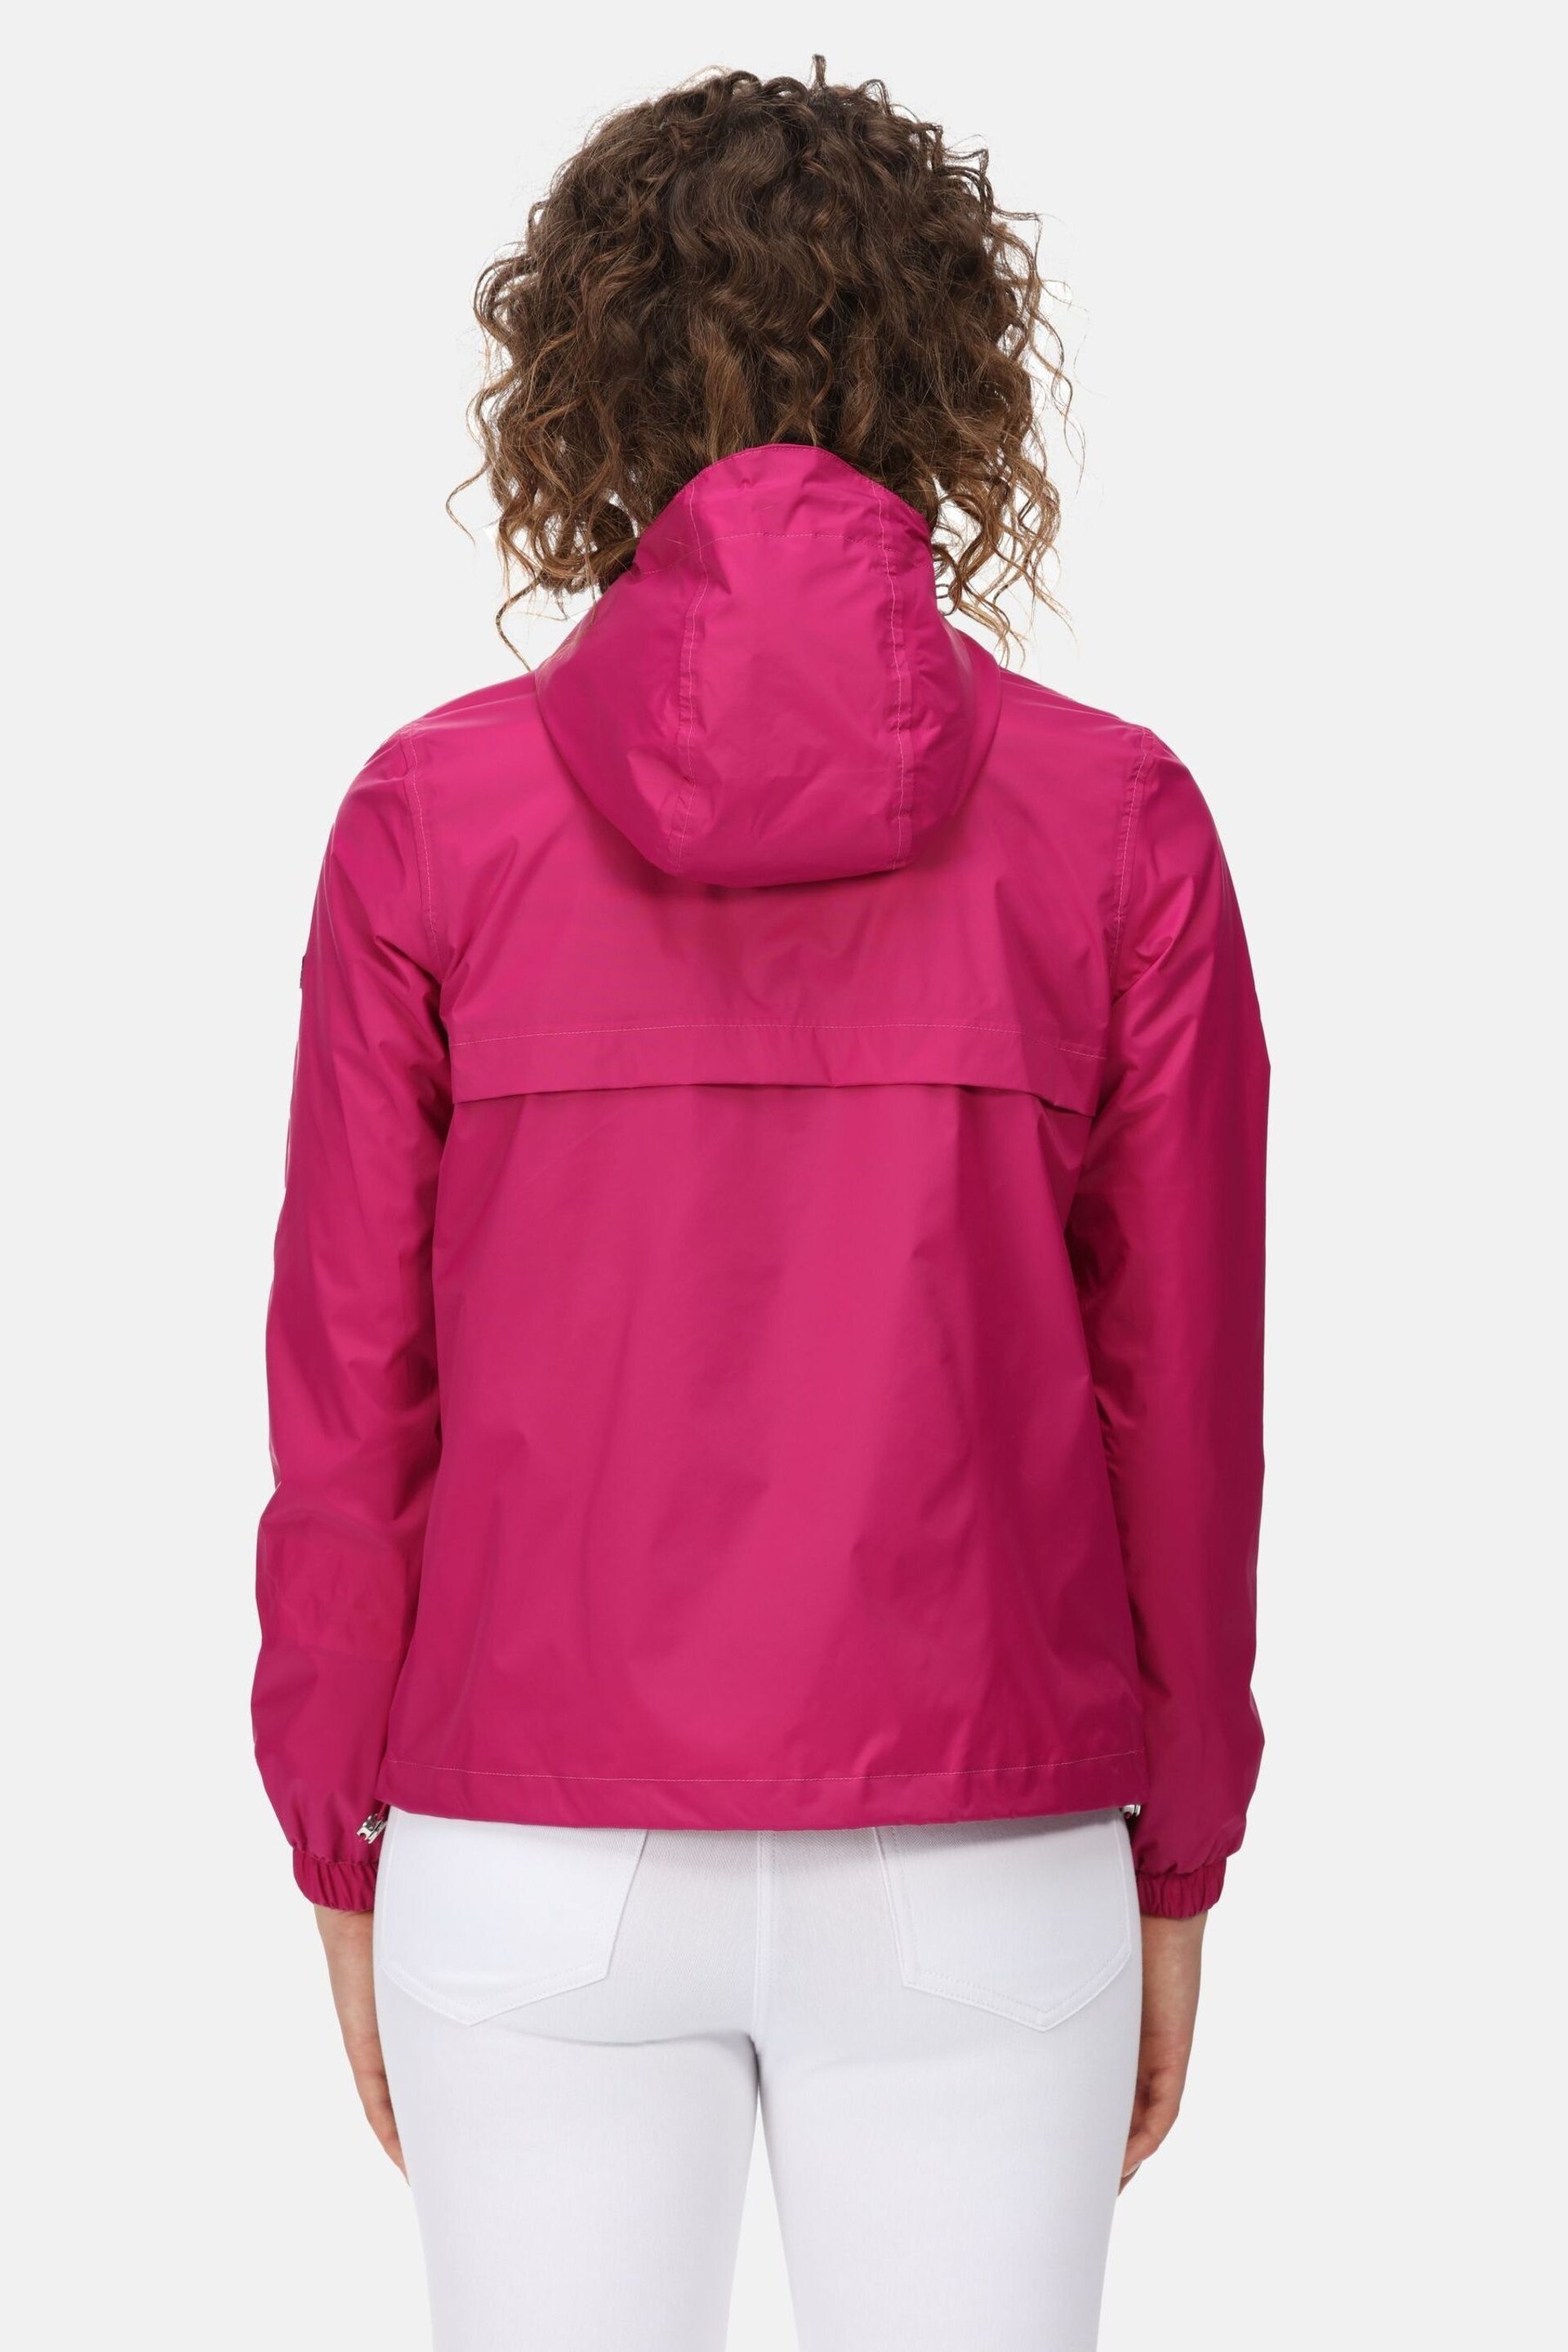 Regatta Pink Lalita Waterproof Jacket - Image 2 of 10